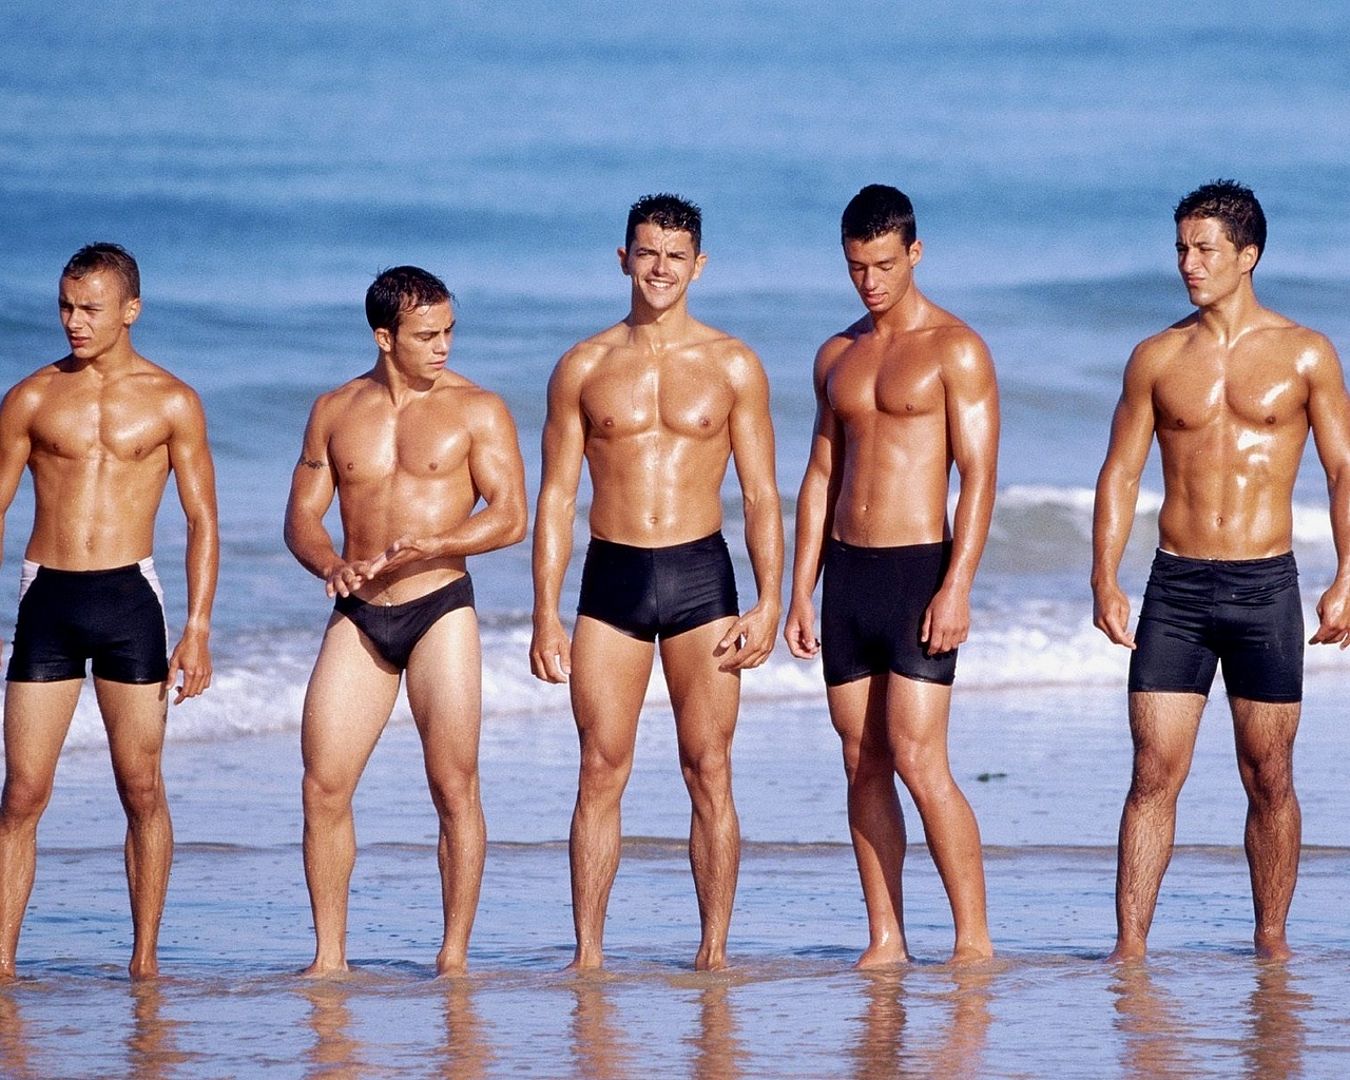 пятеро мокрых парней в трусах вылезли из моря, фото красивого мужчины